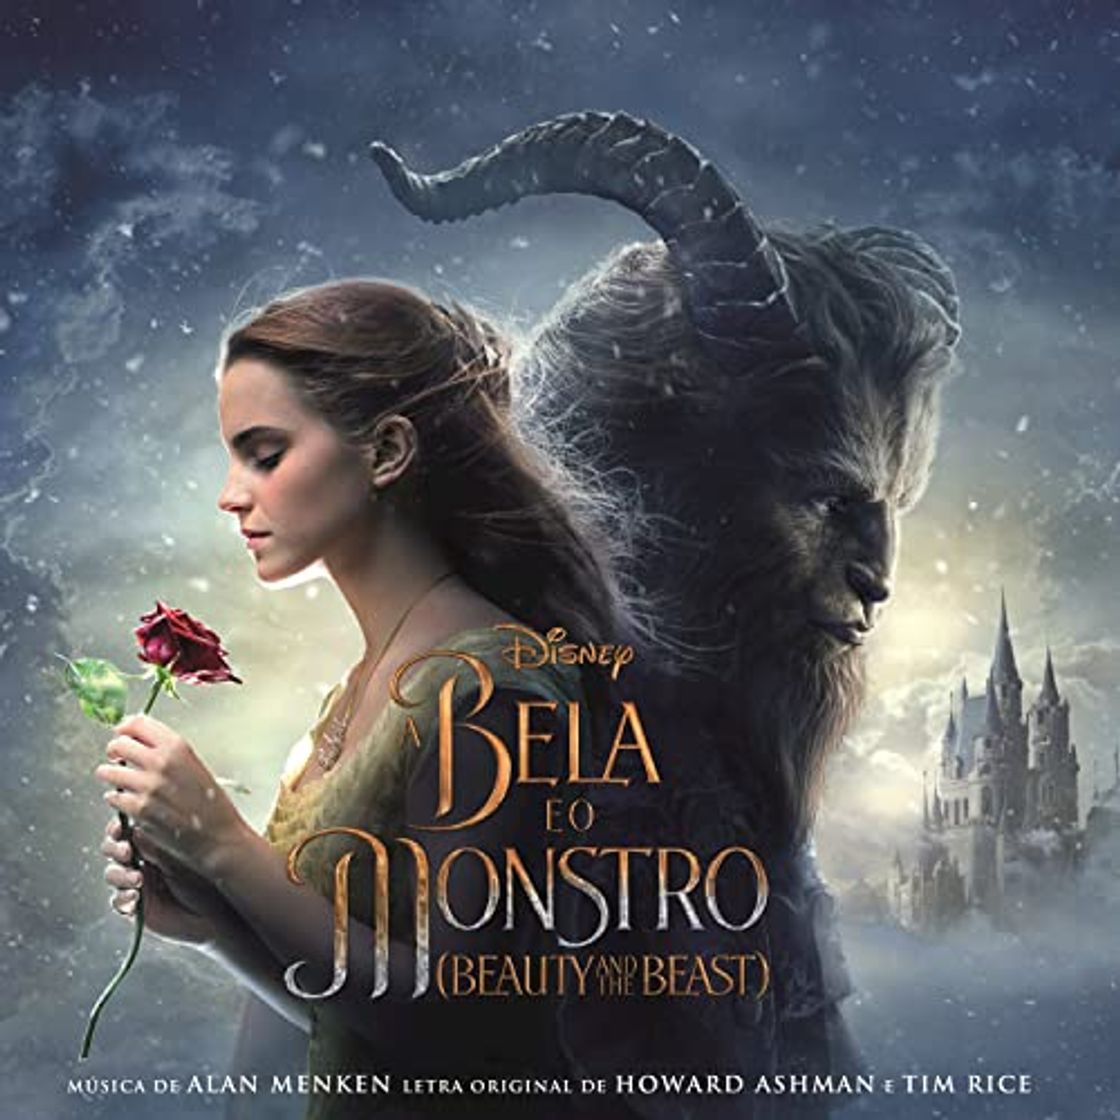 A Bela e o Monstro - Beauty and the Beast